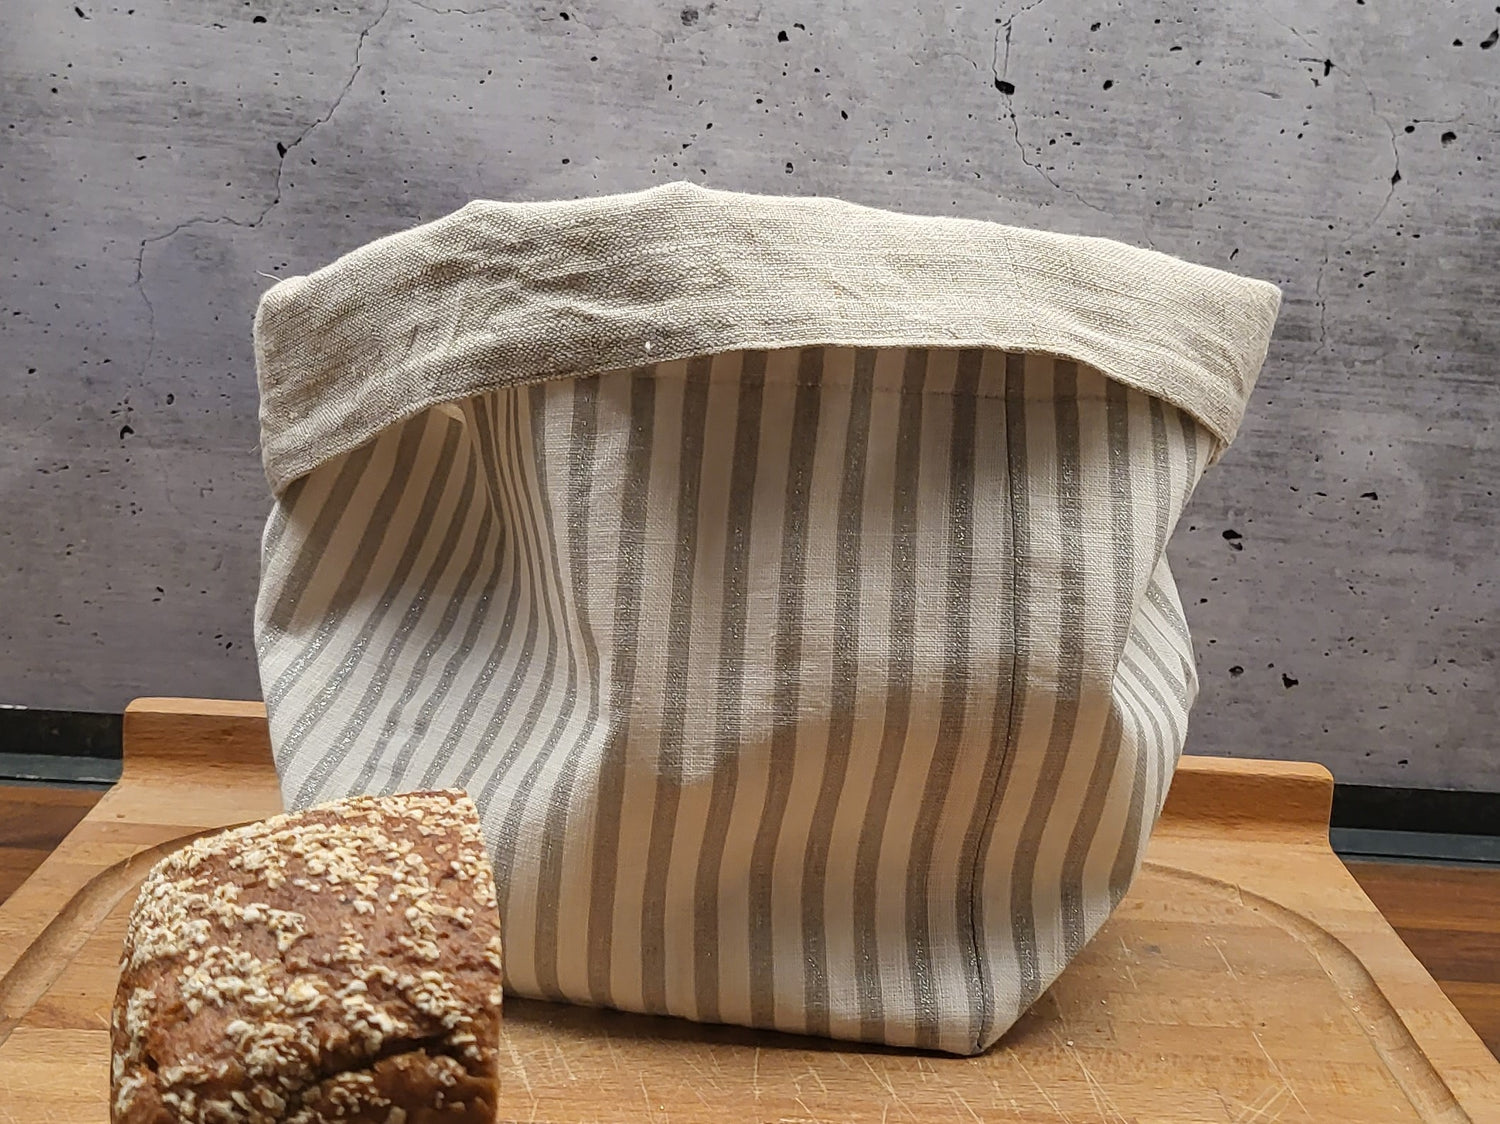 Brotbeutel mit grau-silbernen Streifen, innen Leinen, außen Baumwolle, mit Zugband